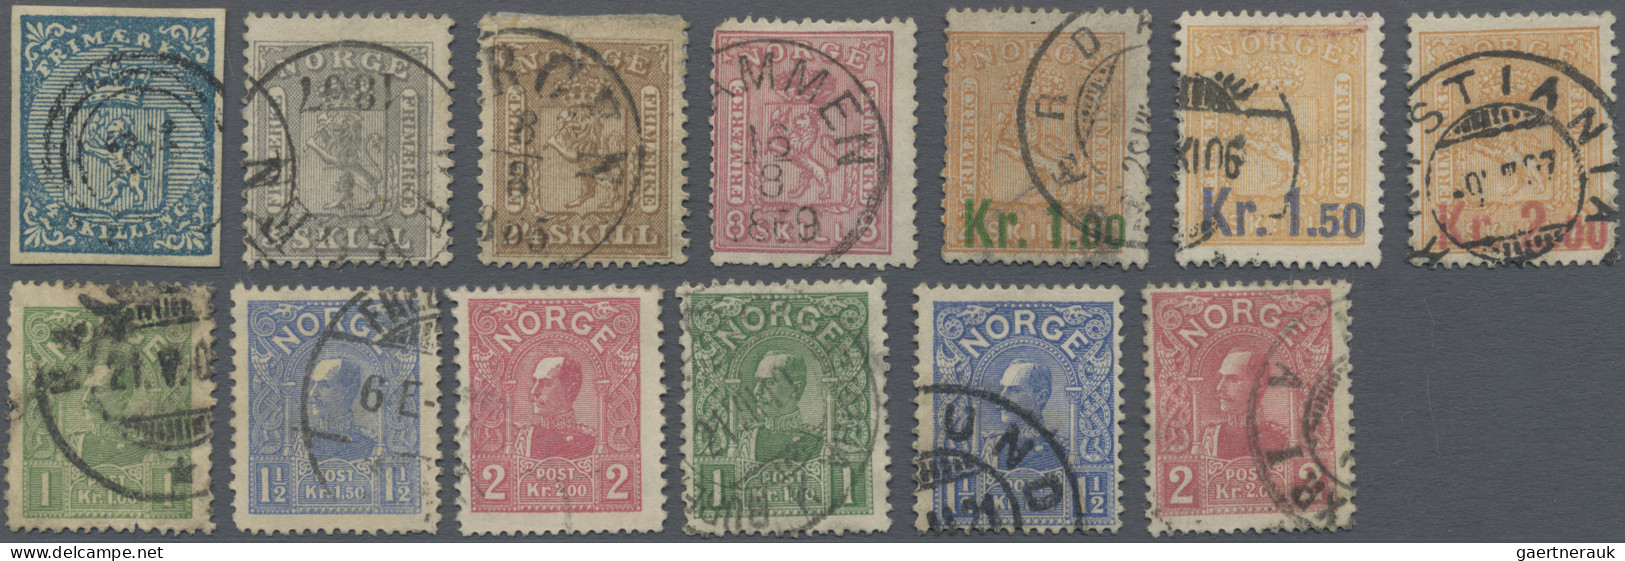 Norway: 1855/1909, Fine Used Lot Of 13 Stamps Incl. Michel Nos. 1, 7, 10, 15, 62 - Gebruikt